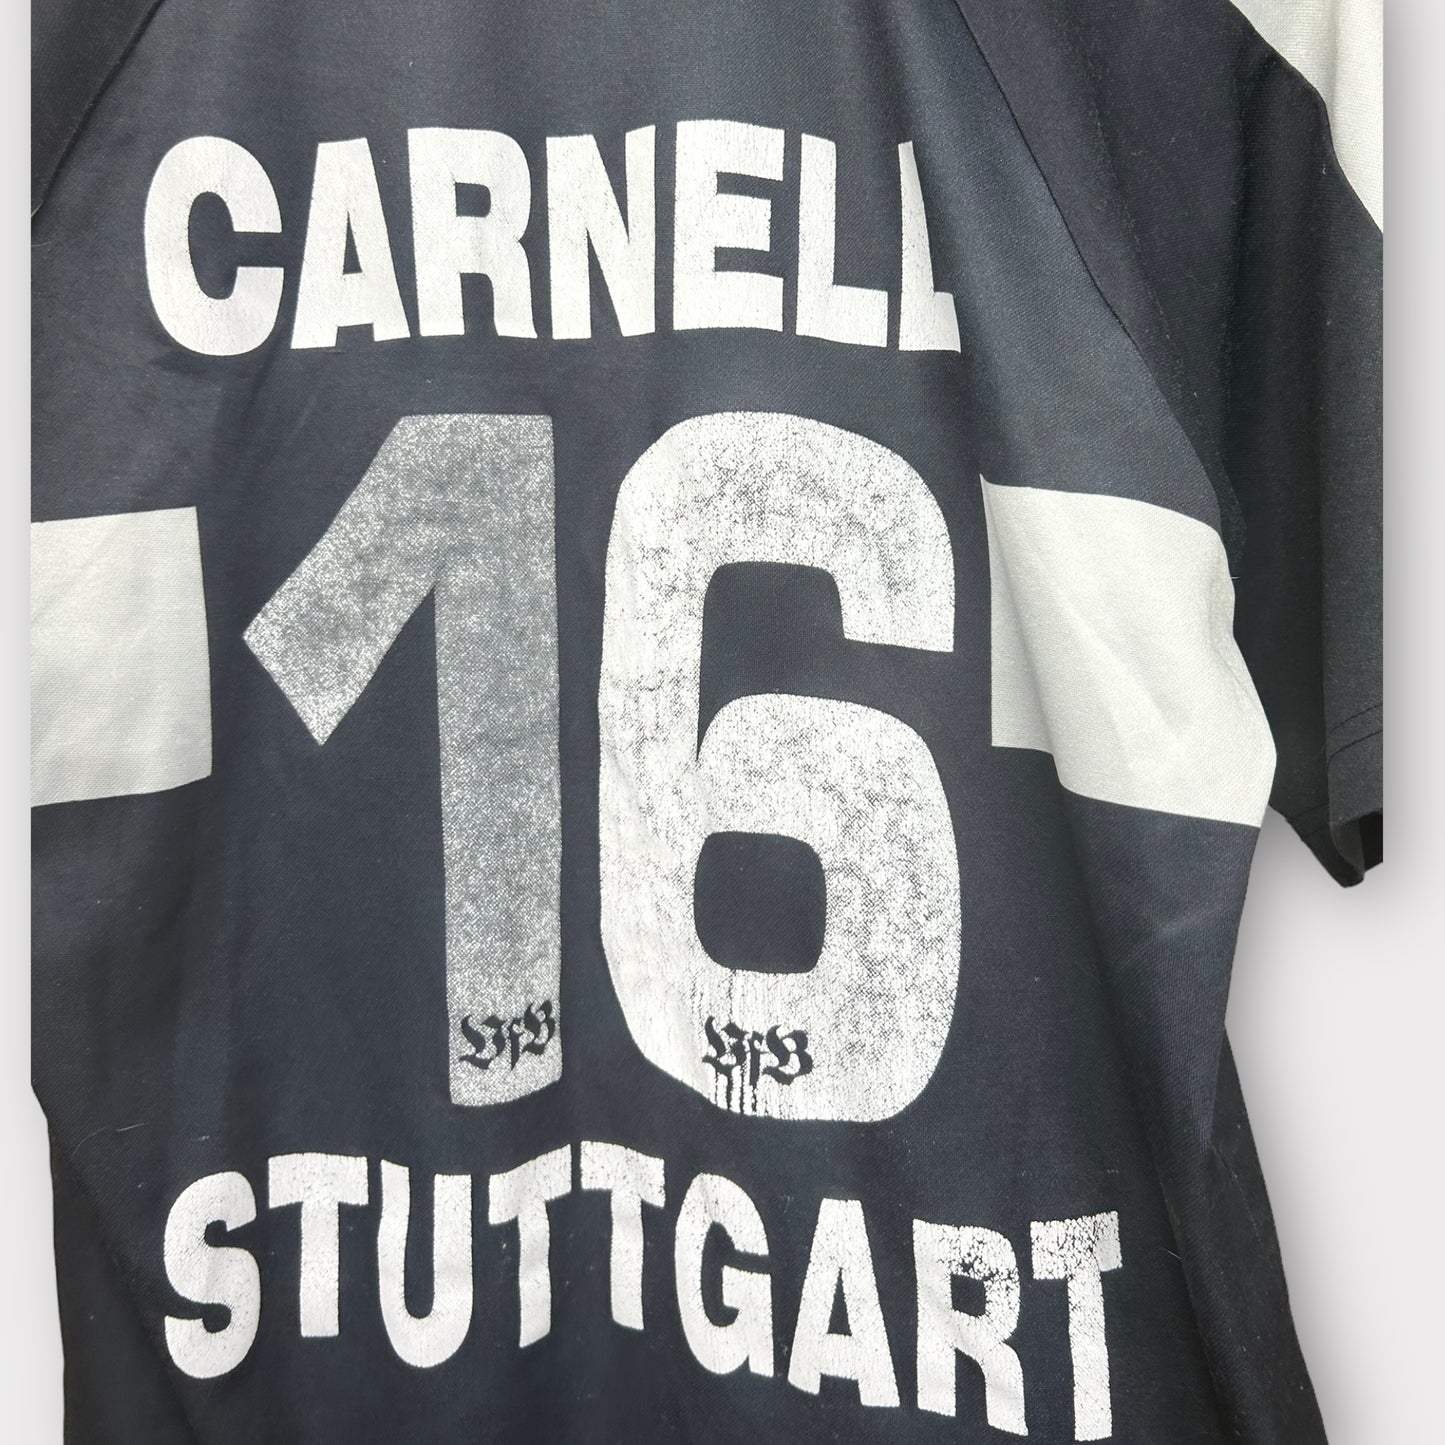 Vfb Stuttgart 2002/03 Away Shirt - Carnell 16 (S)